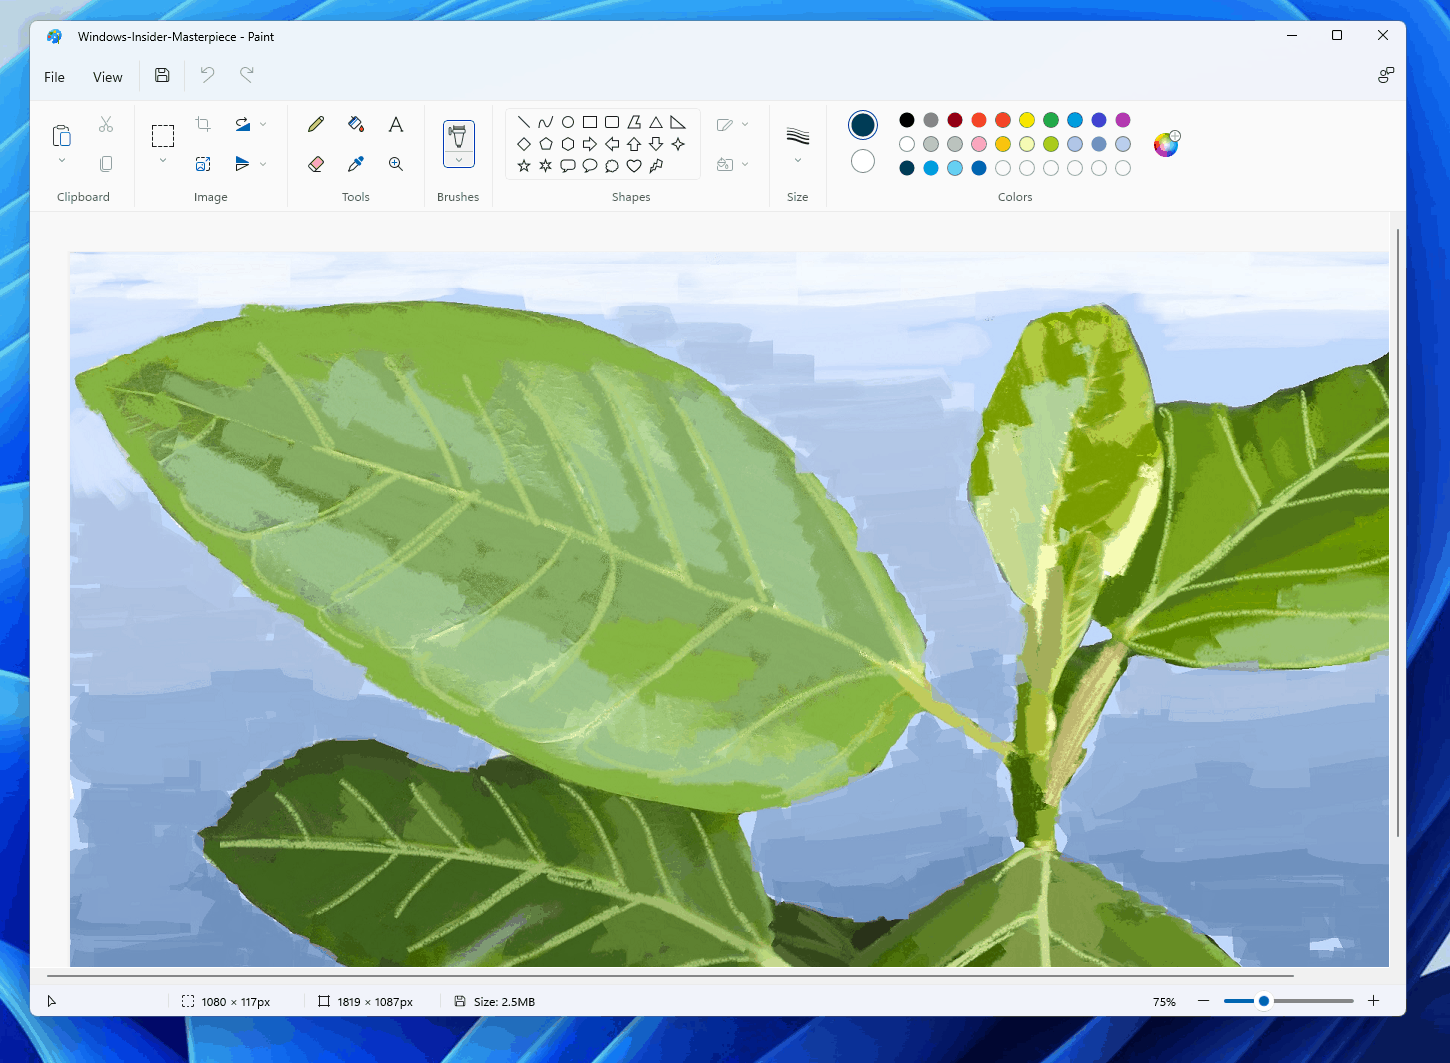 Sử dụng Paint app trên Windows 11 để tạo ra những bức tranh đẹp lung linh chỉ với vài cú click chuột. Với thiết kế giao diện mới, đơn giản và dễ hiểu, chắc chắn bạn sẽ không khó khăn gì khi sử dụng phần mềm này. Hãy tưởng tượng, bạn sẽ có ngay những tác phẩm nghệ thuật hoàn hảo chỉ trong tích tắc!